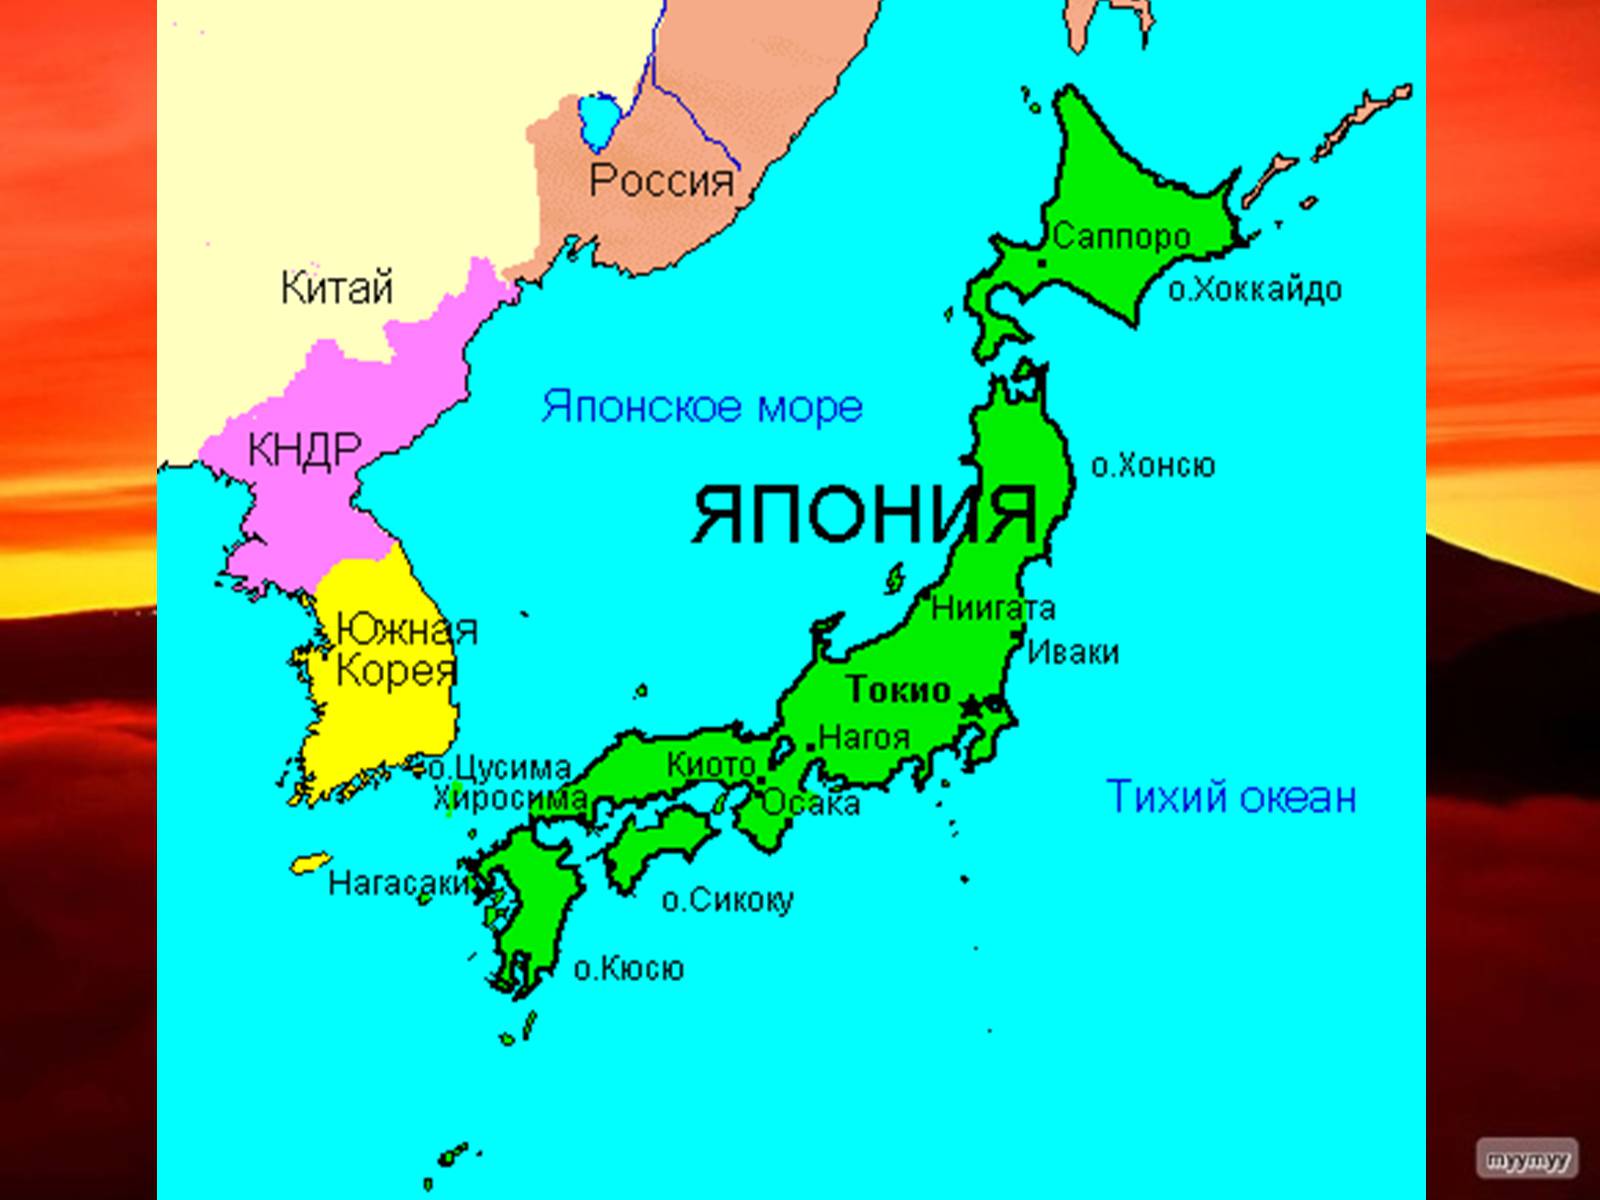 Милая хоккайдо я тебя хонсю. Географическое положение Японии карта. Острова Хоккайдо и Хонсю. Политическая карта Японии. Хоккайдо Хонсю Сикоку Кюсю острова.